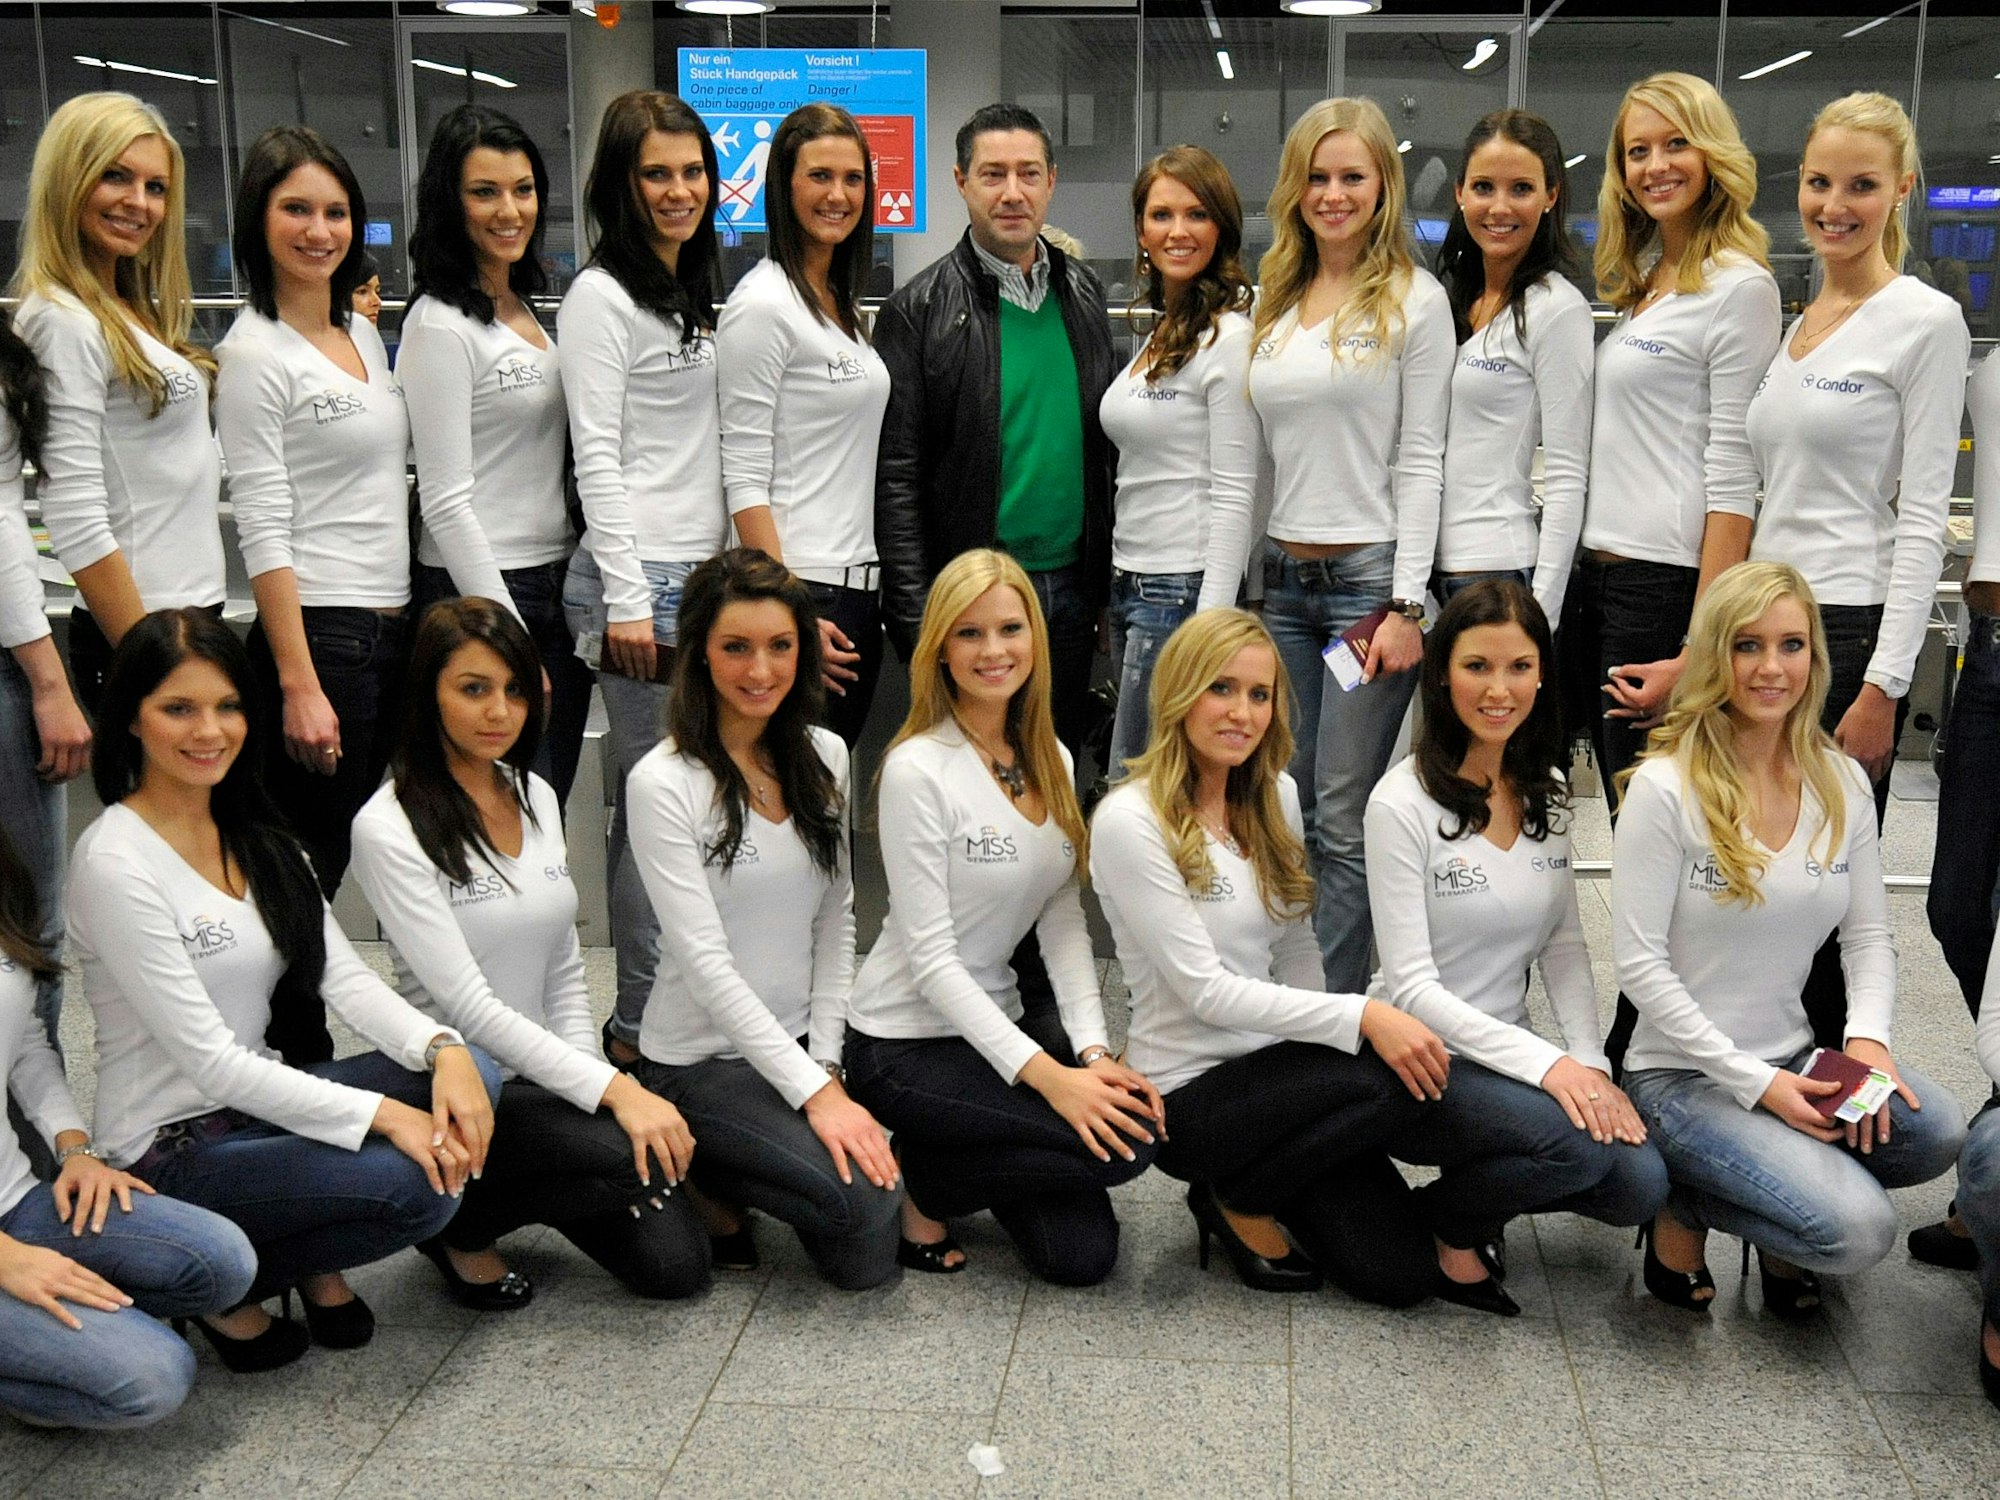 Die Kandidatinnen zur Wahl der «Miss Germany 2011» posieren am 27.01.2011 am Flughafen Frankfurt/Main vor Abflug nach Hurghada (Ägypten) mit ihrem Lauf- und Knigge-Trainer Joachim Llambi.